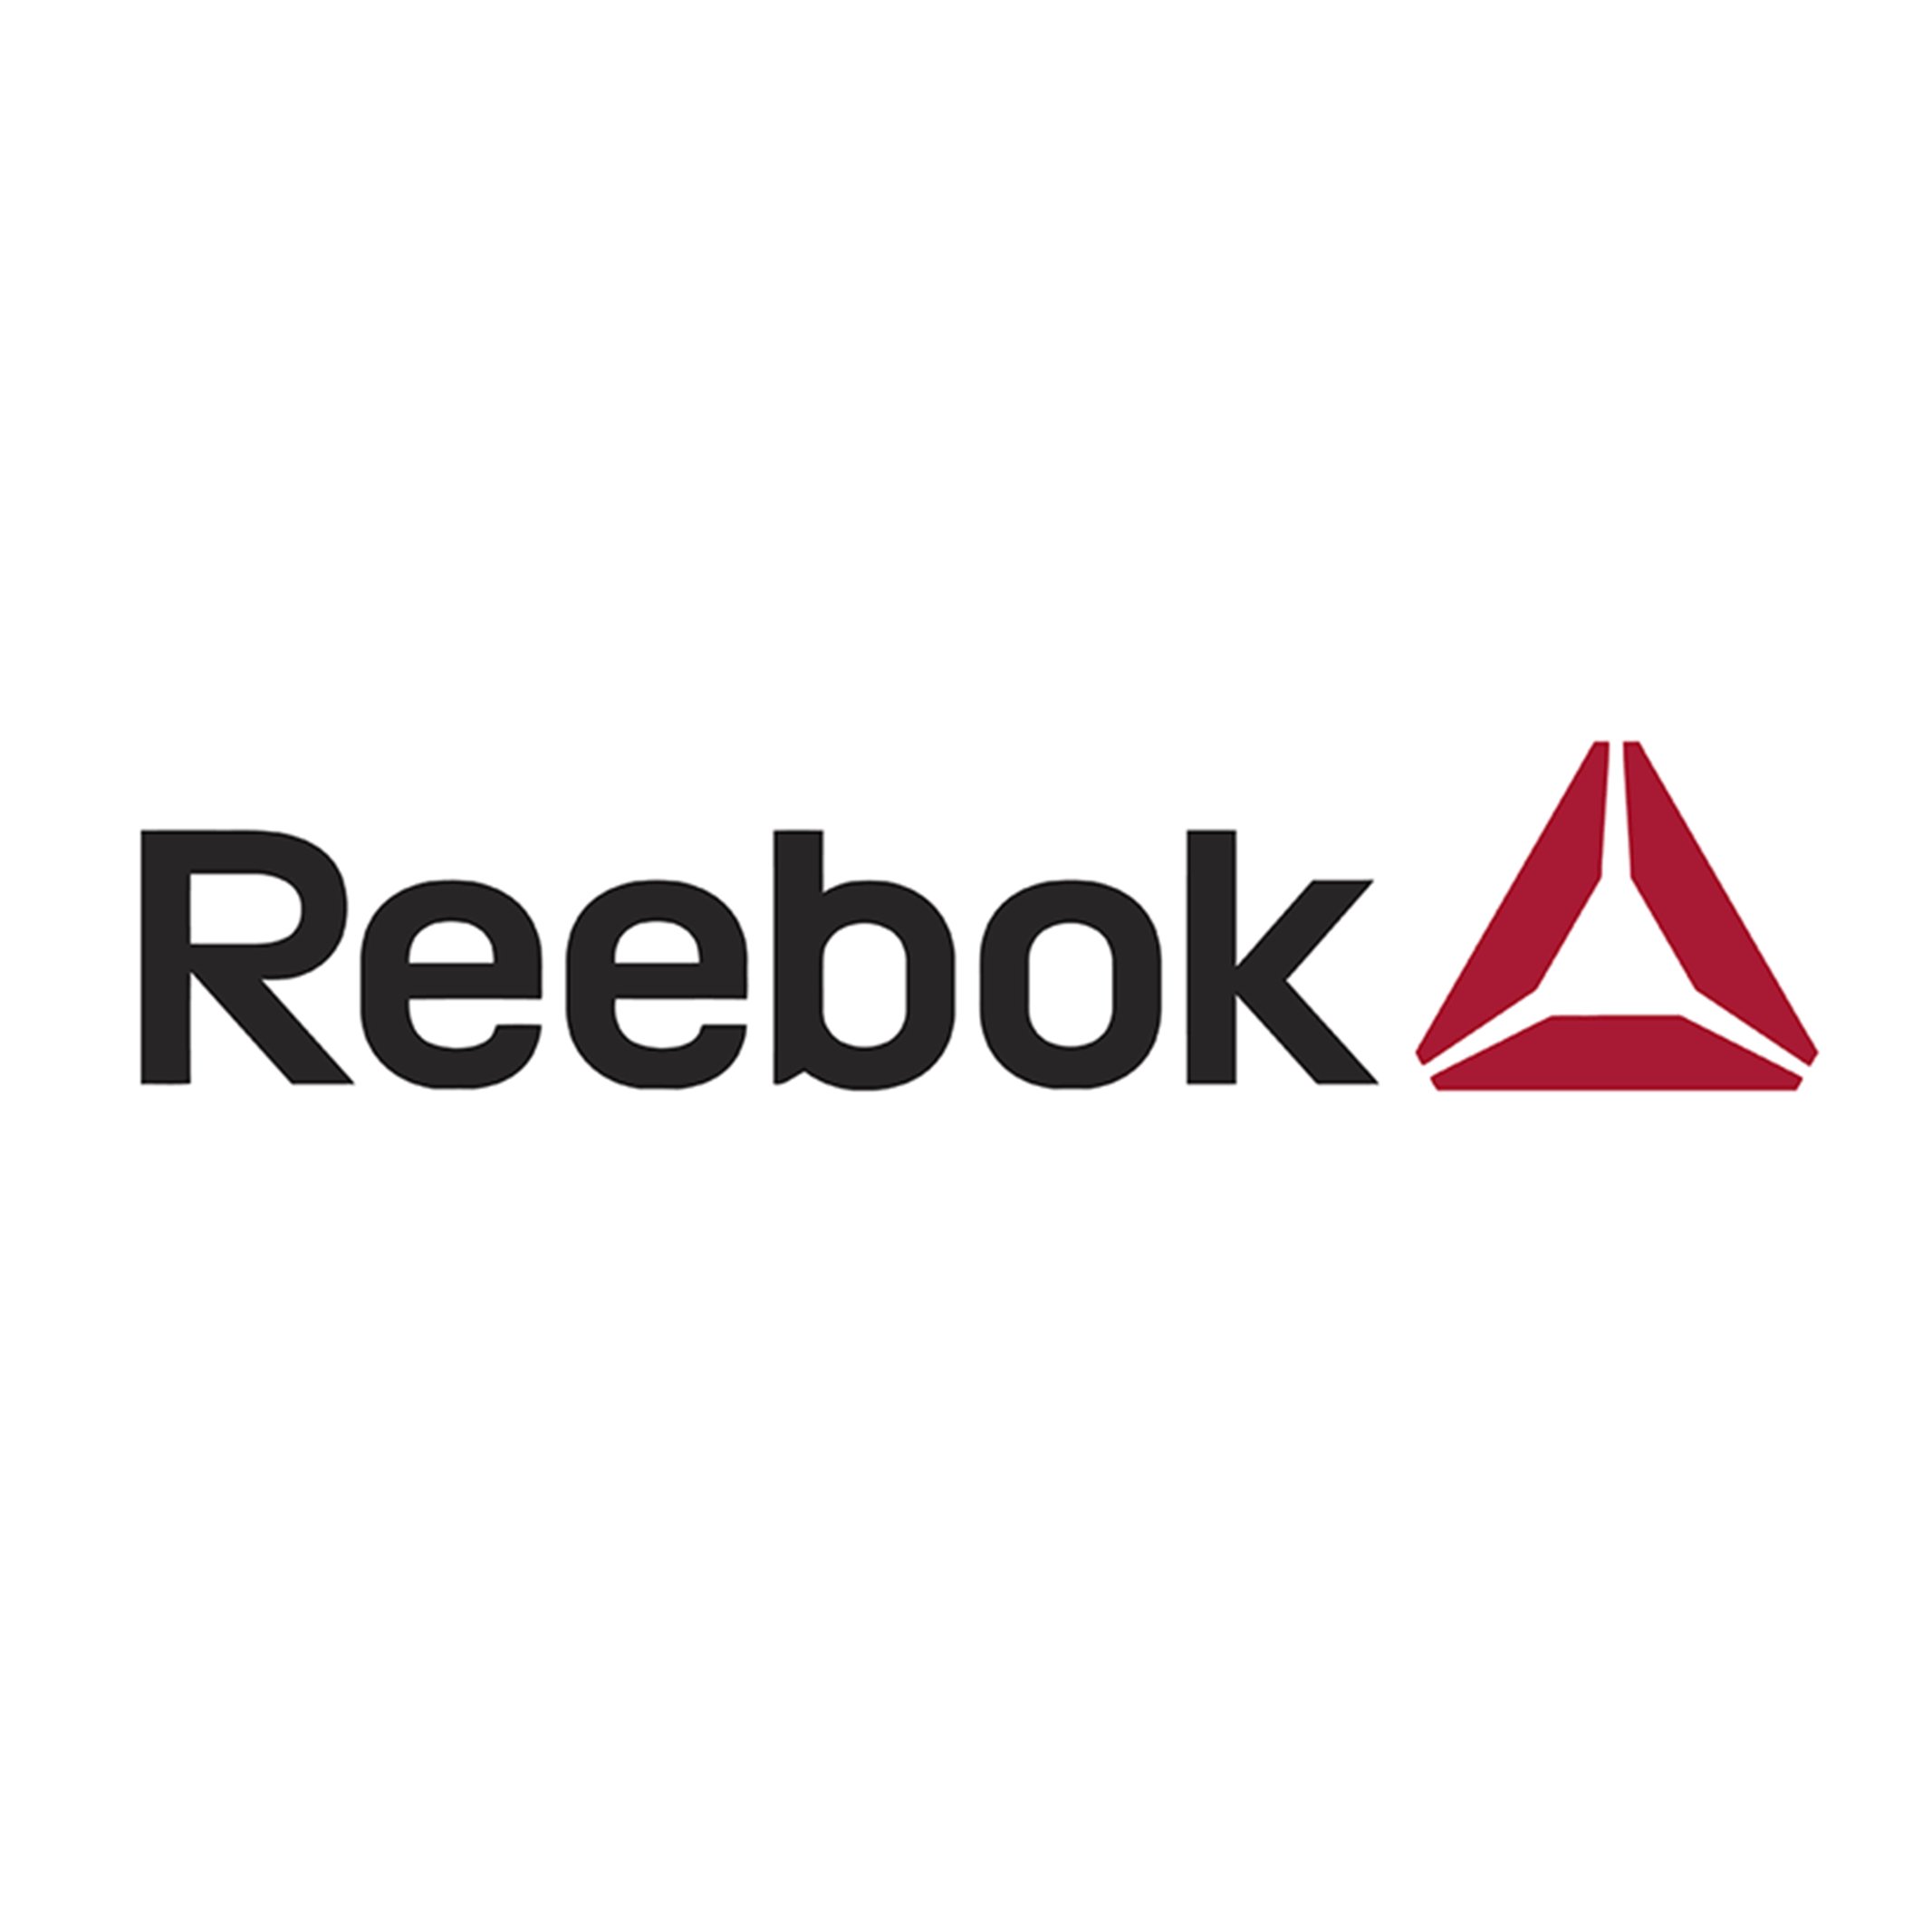 Crece Agency on Twitter: "¡Regreso al @Reebok Reebok su logo rediseñando el que tenía en 1992, a veces para avanzar hay que retroceder. ¿Con cuál os quedáis? https://t.co/cKgGI8kJ8s #creceagency #graphicdesign #